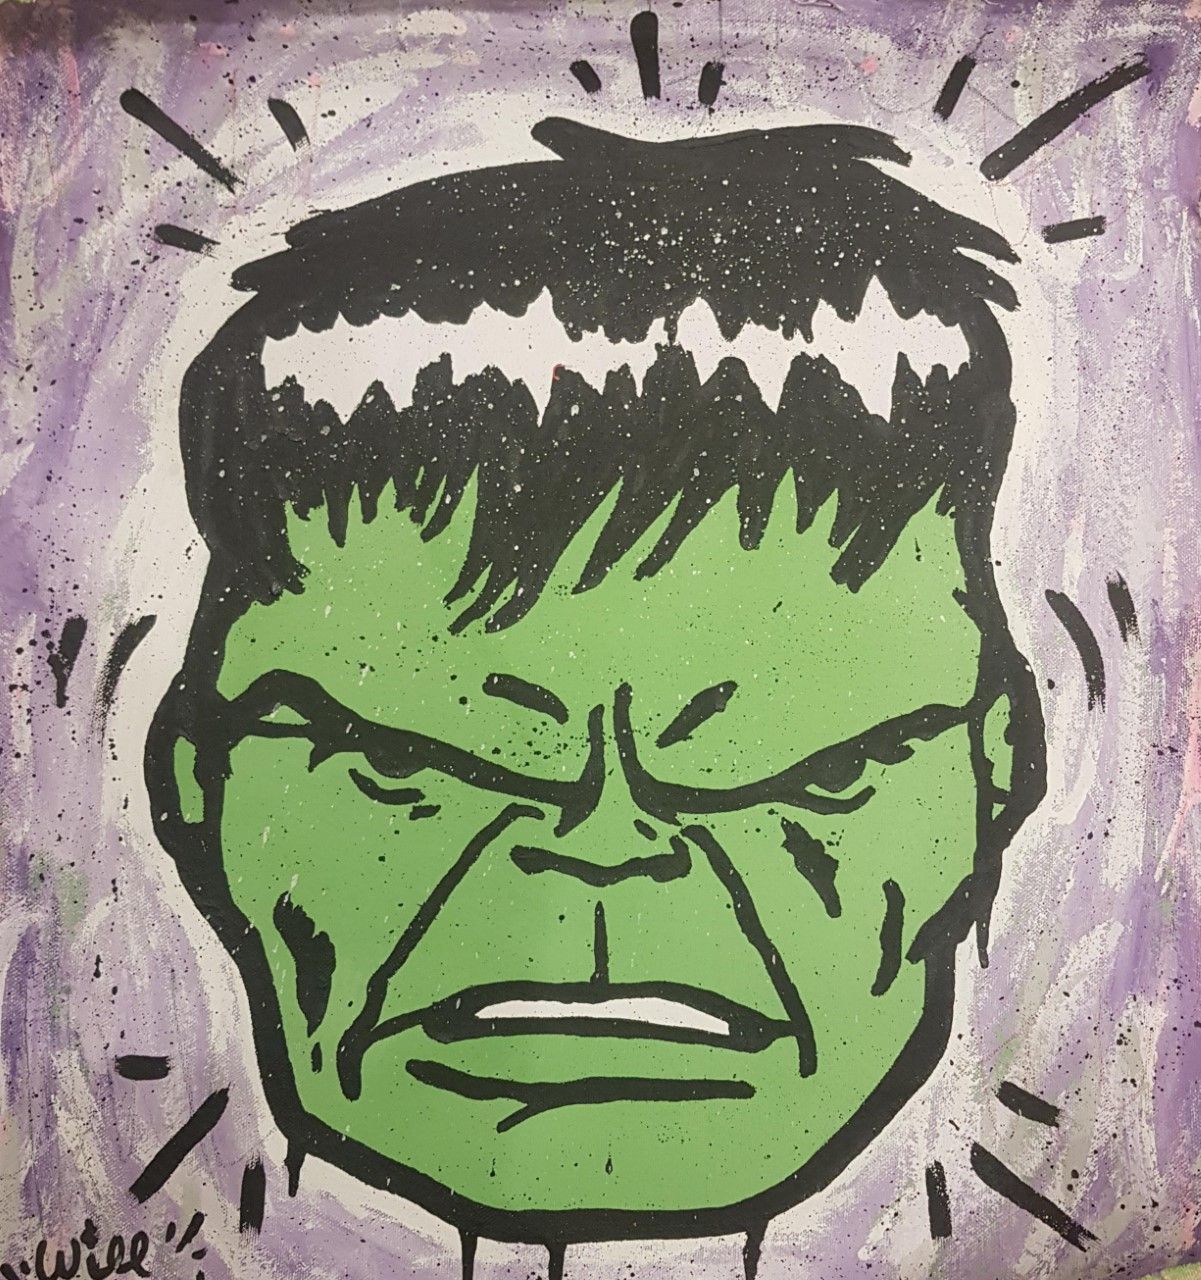 STREET WILL 威尔街
纽约（美国）1979年

#TH Hulk
2016

丙烯酸和喷涂在画布上/丙烯酸和喷涂在画布上
62,00x53,00
真实&hellip;